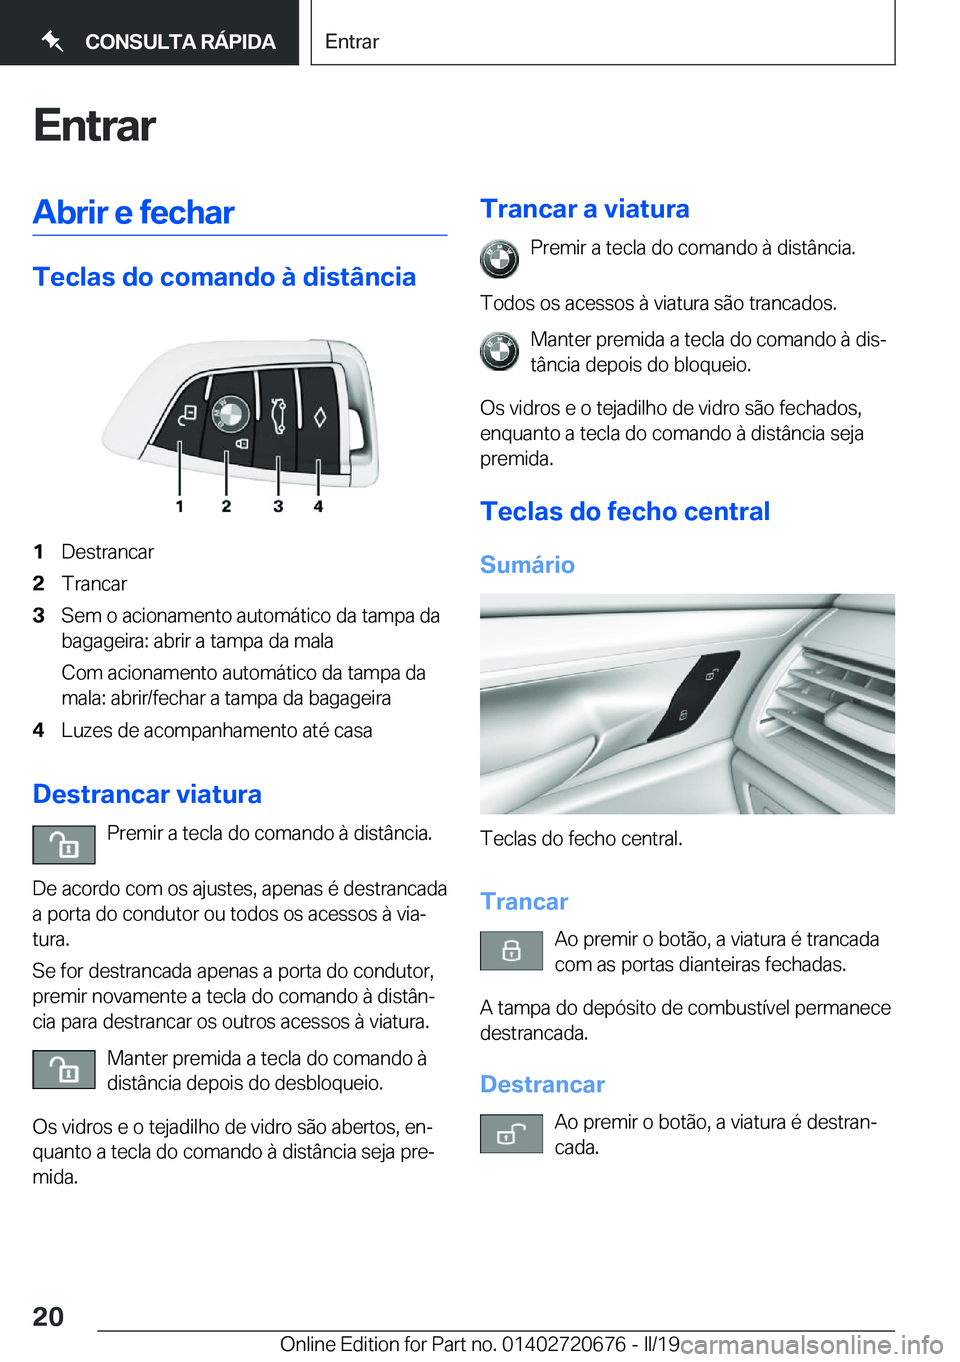 BMW M5 2019  Manual do condutor (in Portuguese) �E�n�t�r�a�r�A�b�r�i�r��e��f�e�c�h�a�r
�T�e�c�l�a�s��d�o��c�o�m�a�n�d�o��à��d�i�s�t�â�n�c�i�a
�1�D�e�s�t�r�a�n�c�a�r�2�T�r�a�n�c�a�r�3�S�e�m��o��a�c�i�o�n�a�m�e�n�t�o��a�u�t�o�m�á�t�i�c�o�